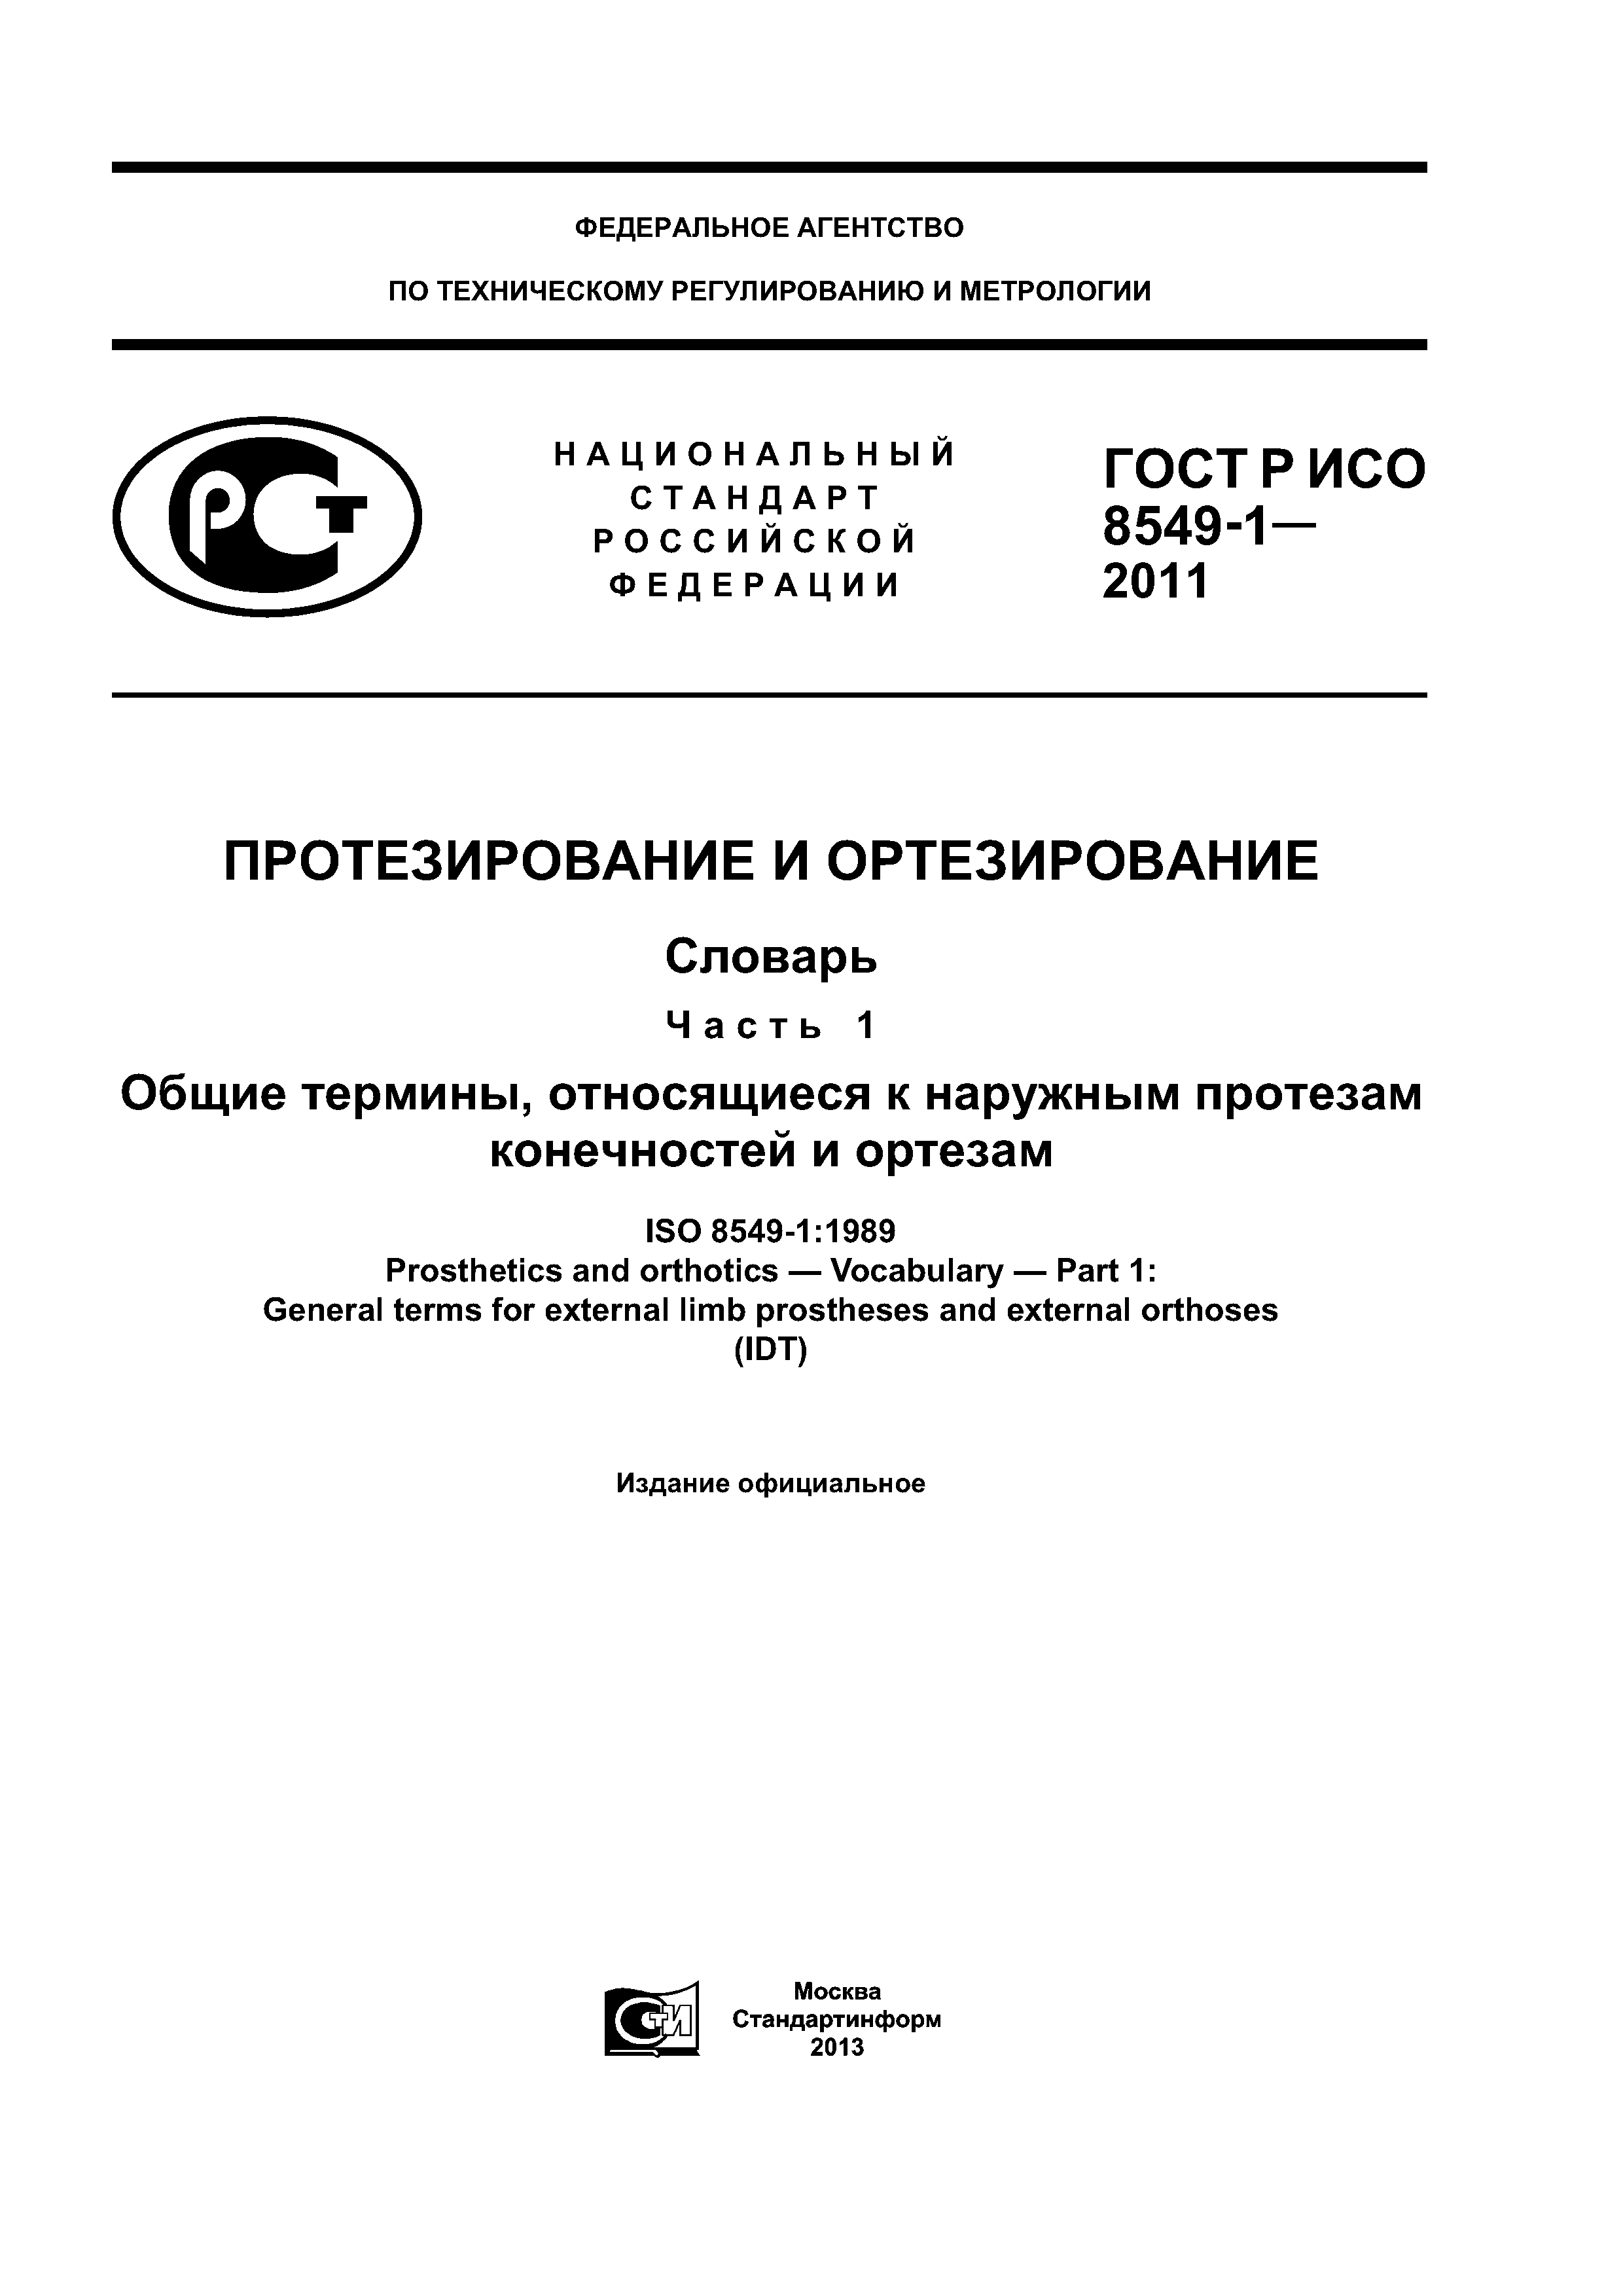 ГОСТ Р ИСО 8549-1-2011